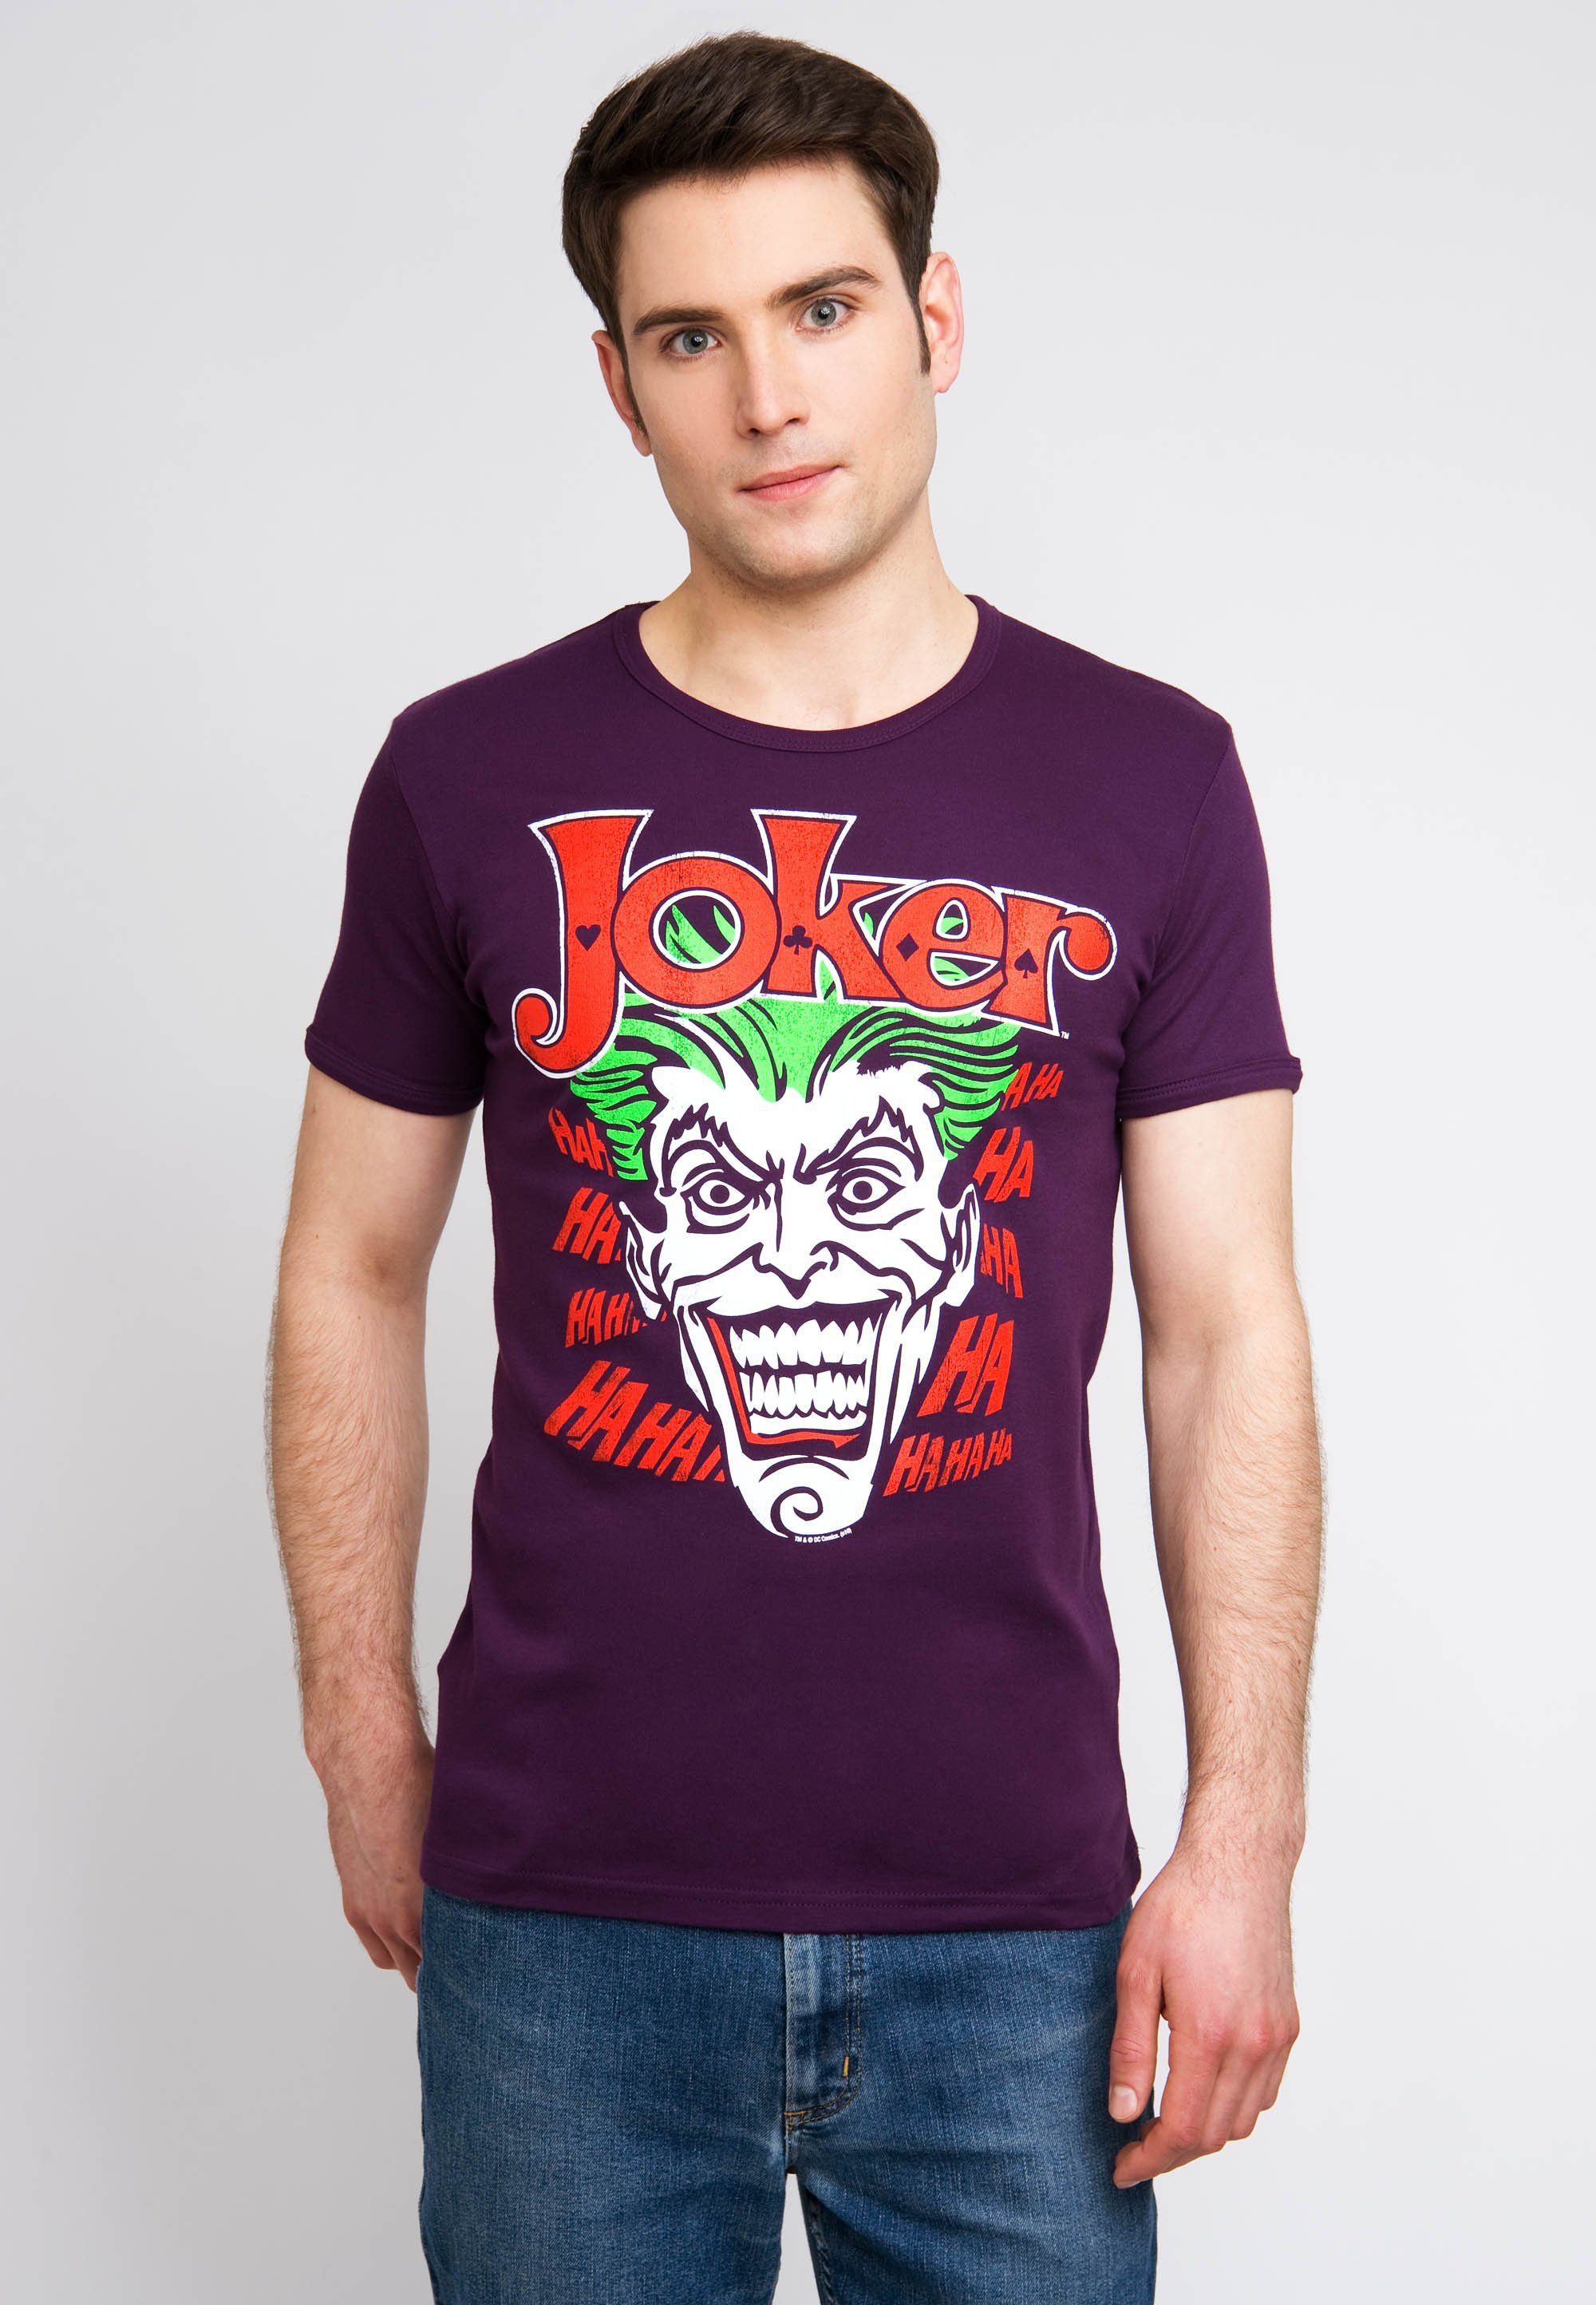 LOGOSHIRT T-Shirt Joker Batman mit kultigem Joker-Print bunt